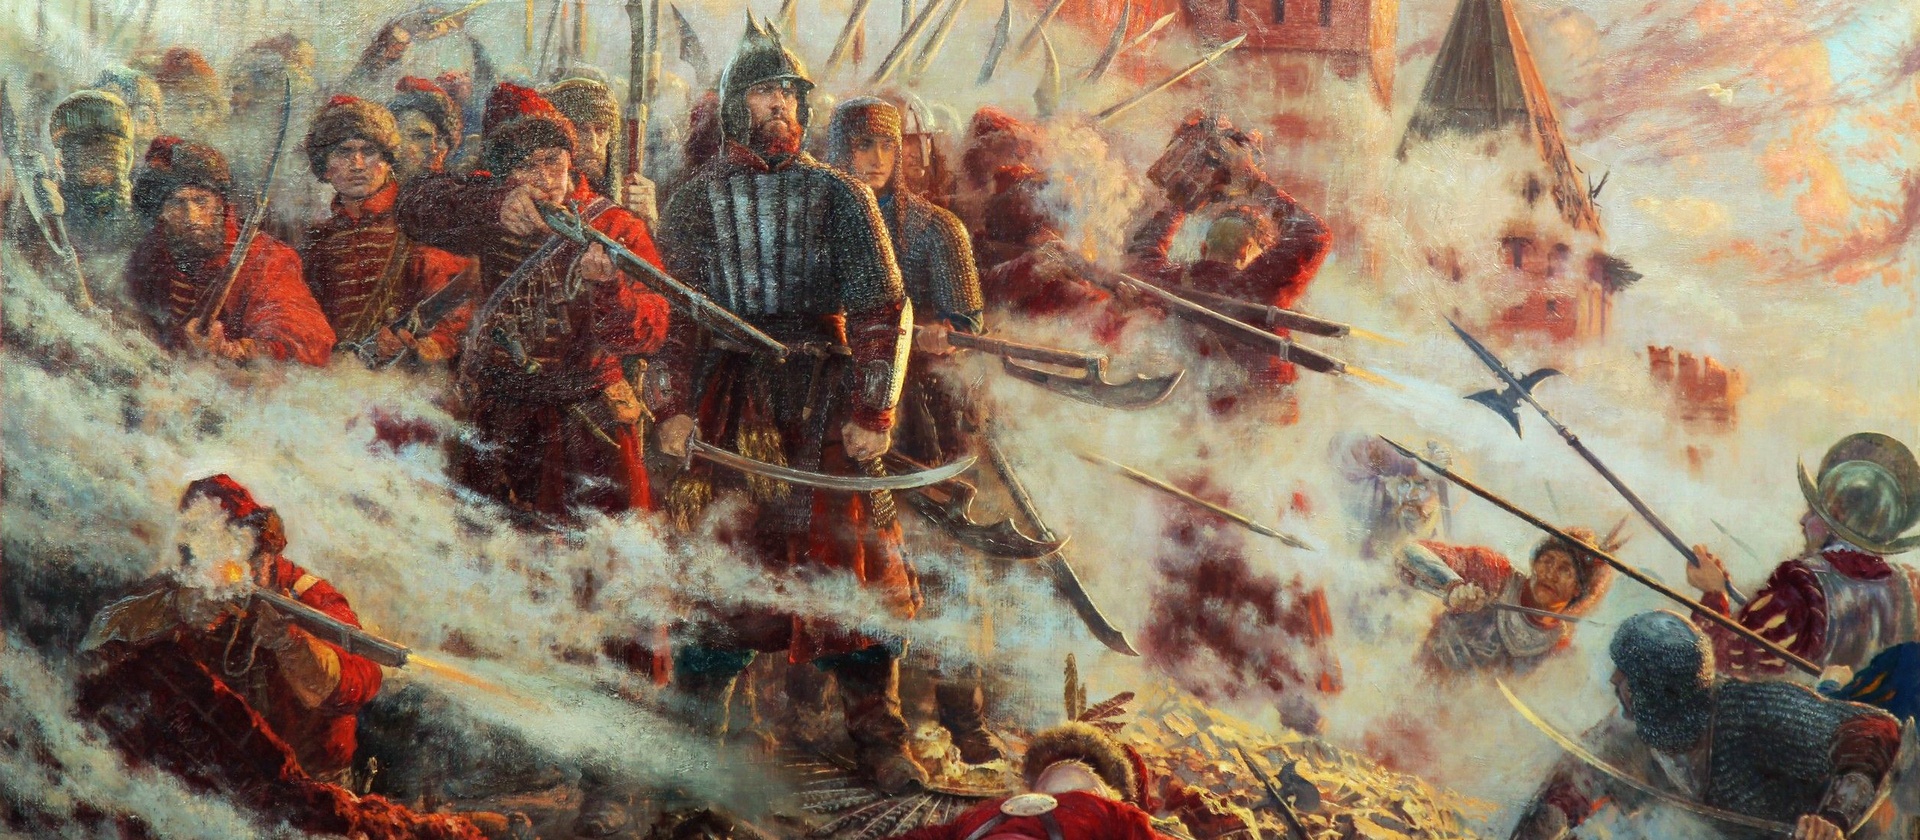 Смоленск, 1611. Пиррова победа поляков